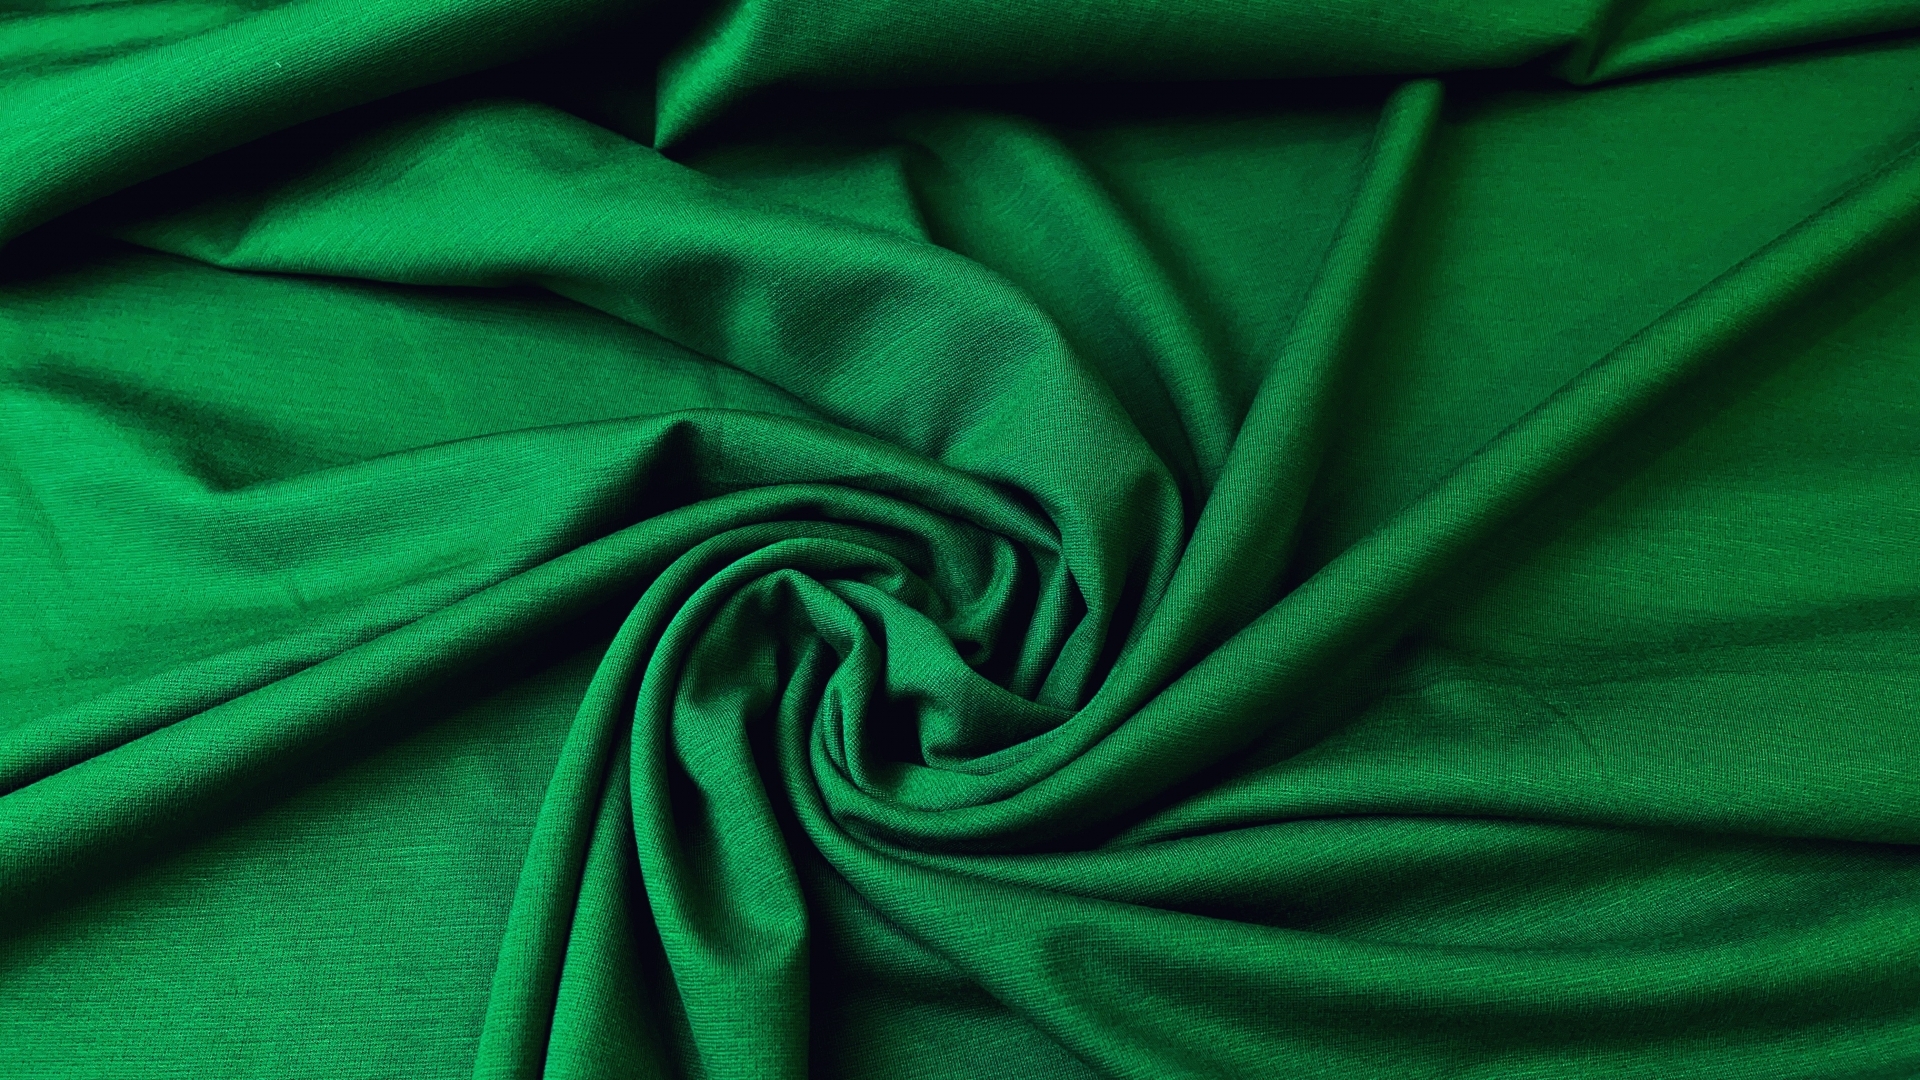 Джерси насыщенного зеленого оттенка, плотность 480гр метр погонный. Идеально для платья любого силуэта, туники, теплой водолазки. Идеальное качество, носится годами, не теряя внешнего вида. Цена снижена потому что данный оттенок не является базовым.